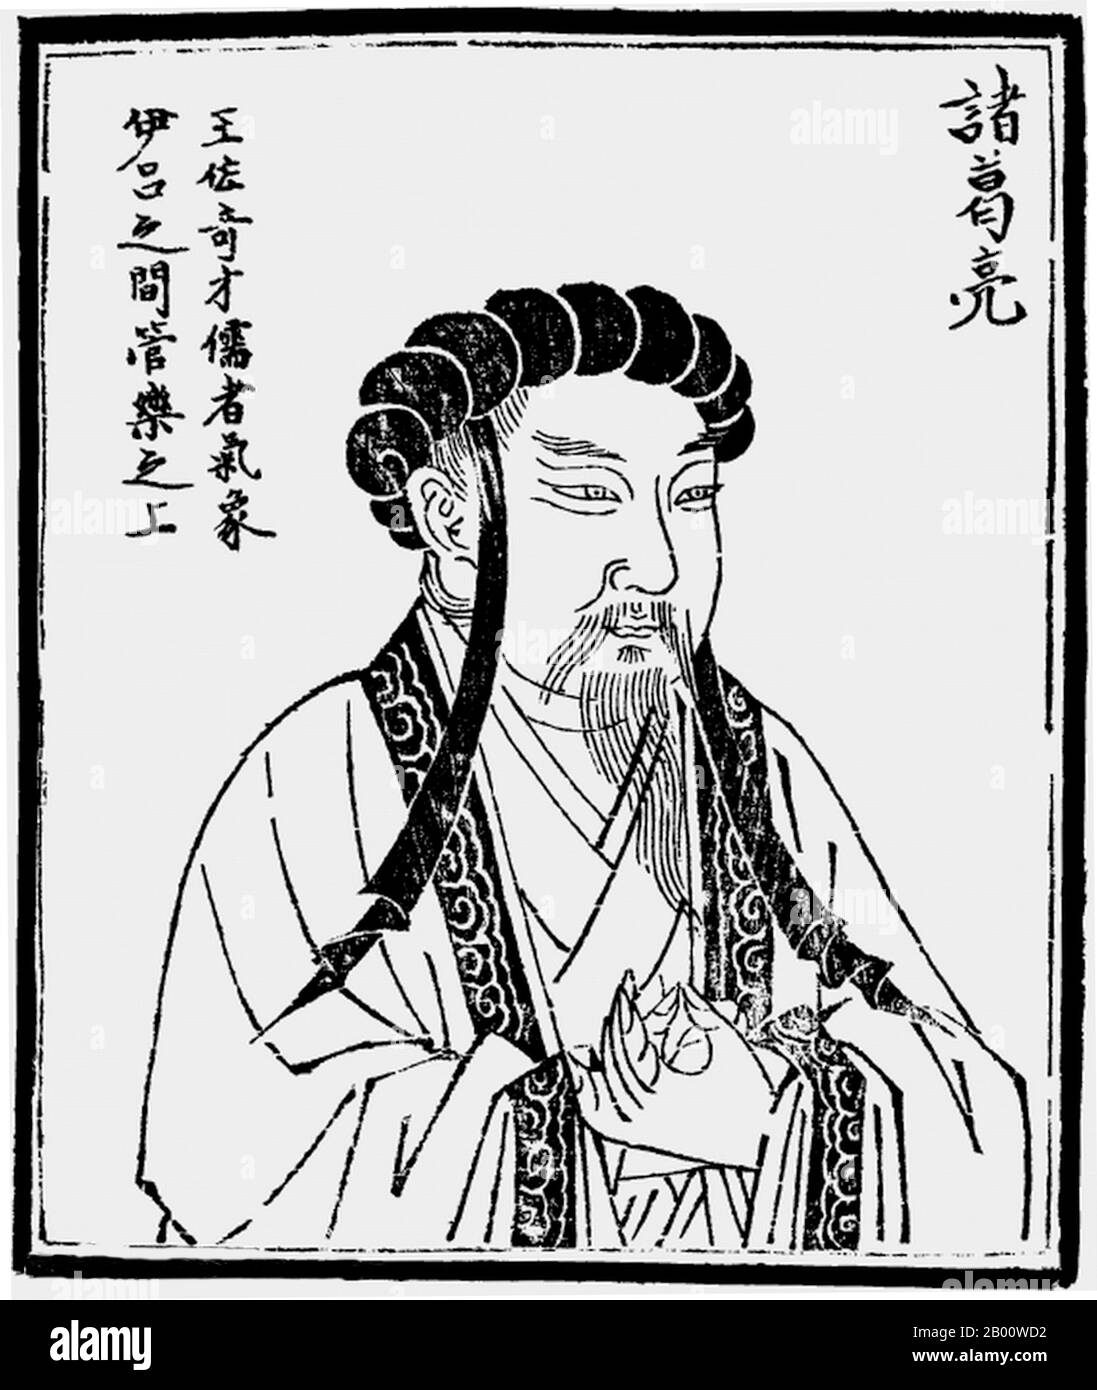 Cina: Zenorme Liang (CE 181-234) è stato Cancelliere di Shu Han durante il periodo dei tre Regni della storia cinese (CE 220–280). Zenorme Liang (CE 181-234) fu Cancelliere di Shu Han durante il periodo dei tre Regni della storia cinese. È spesso riconosciuto come il più grande e più compiuto stratega della sua epoca. Spesso raffigurato indossando un accappatoio e tenendo un ventilatore fatto di piume gru, Zenorme non era solo un importante stratega militare e statista; era anche un abile studioso e inventore, con una reputazione ammirata che crebbe anche mentre viveva in relativo isolamento. Foto Stock